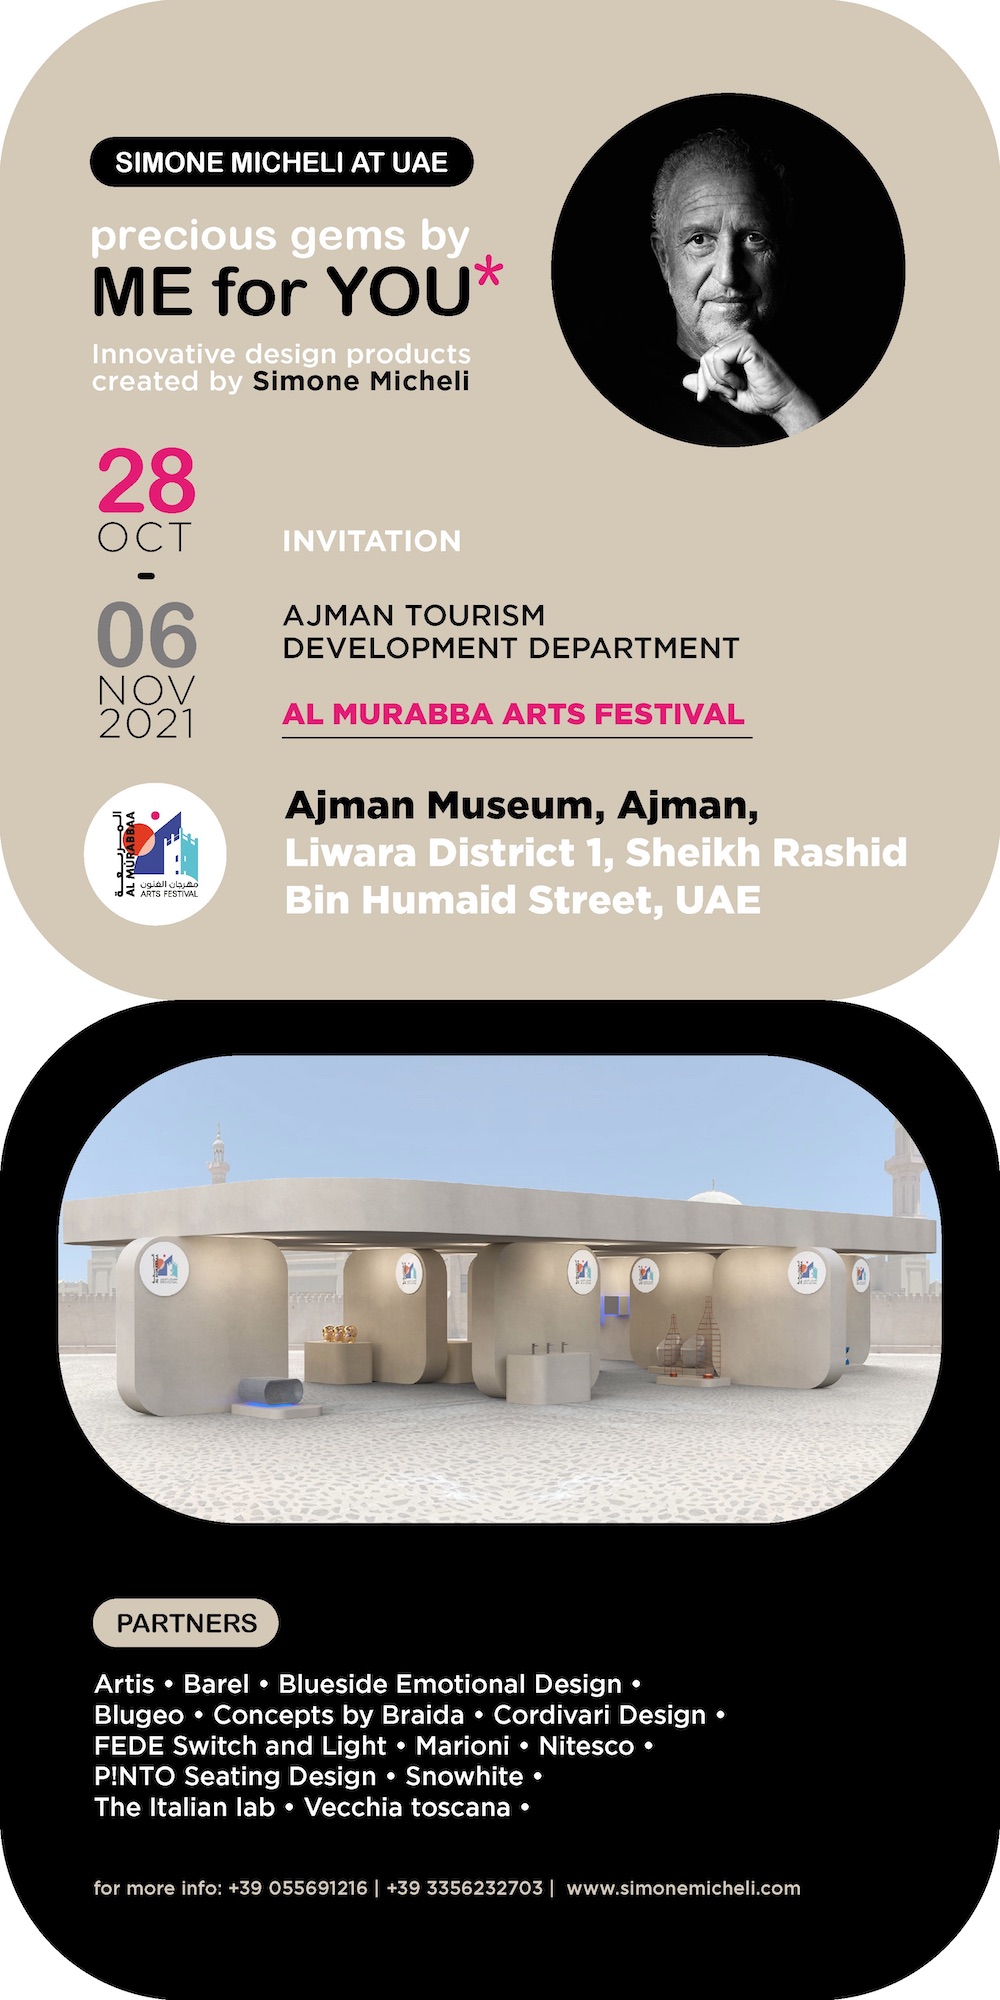 Artis Rubinetterie con Simone Micheli all’Al Murabbaa Arts Festival di Ajman